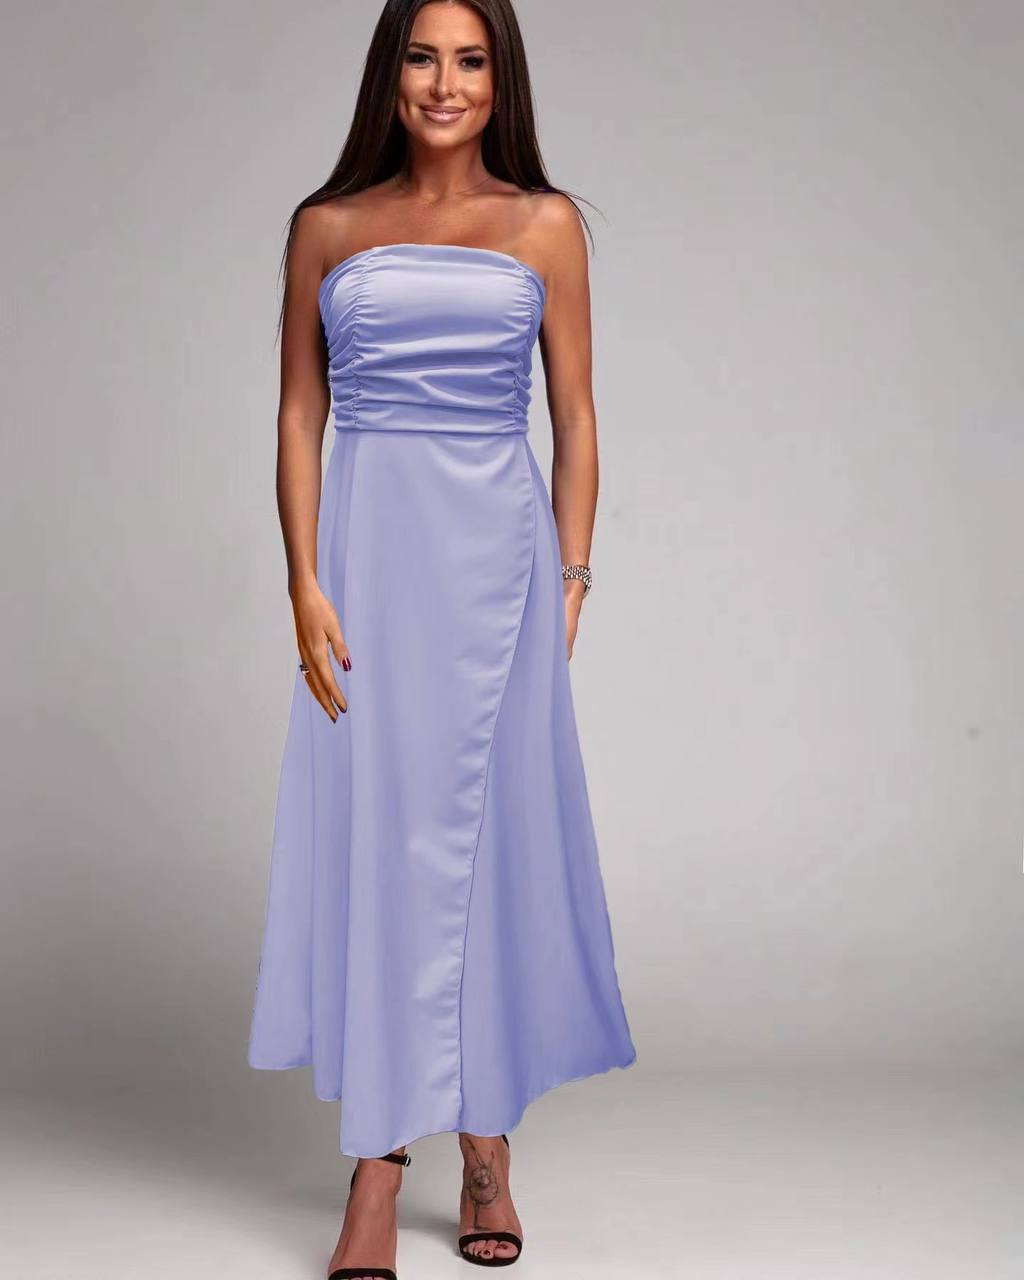 Γυναικείο στράπλες φόρεμα 84271 γαλάζιο